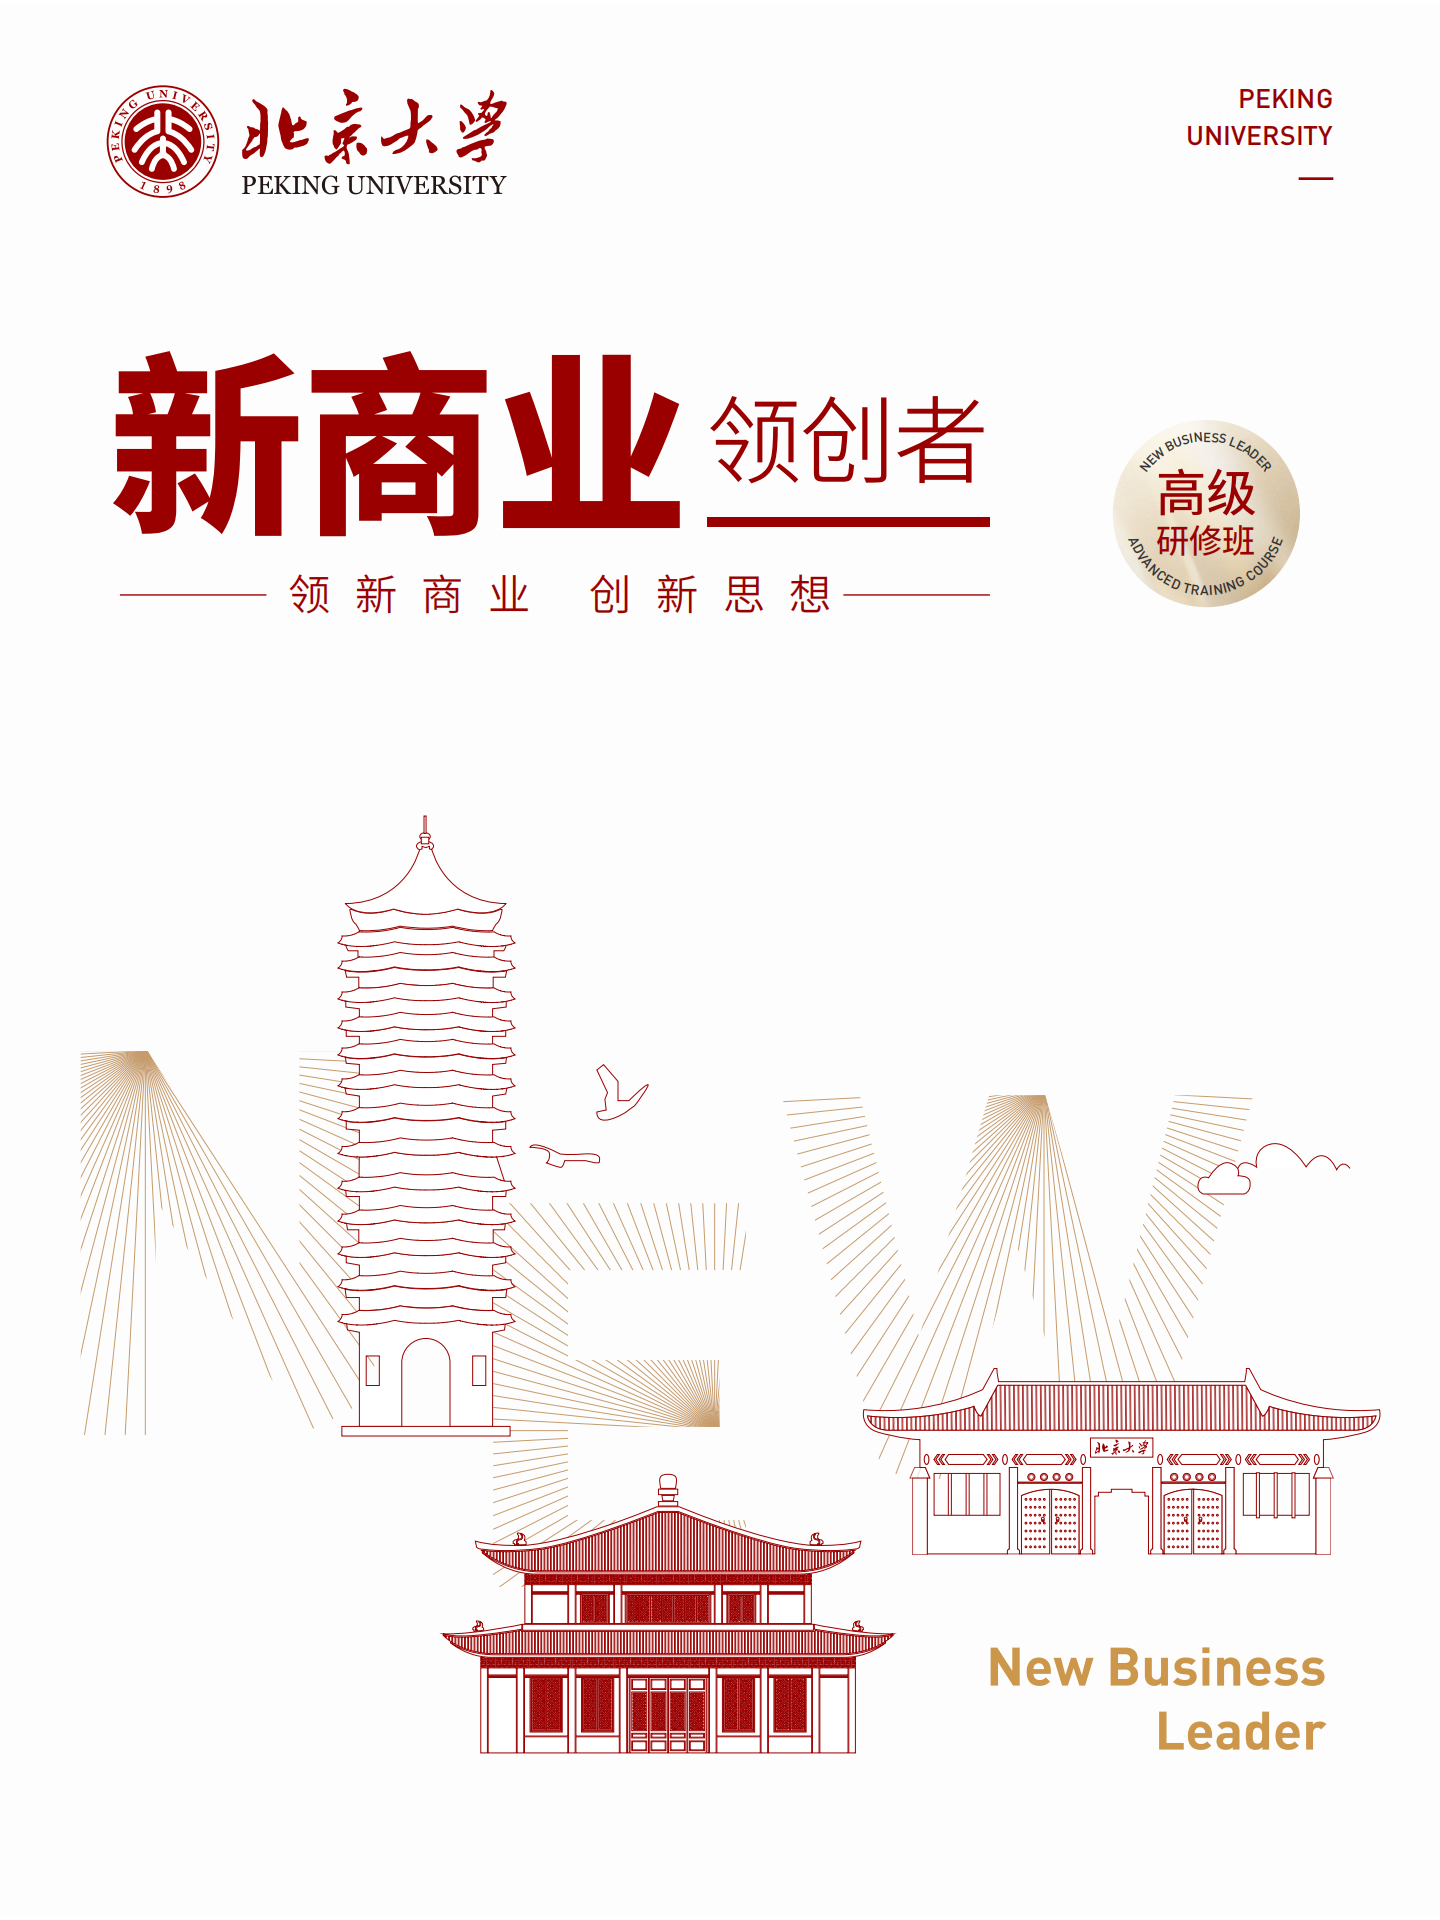 北京大学新商业领创者项目(4)_00.png